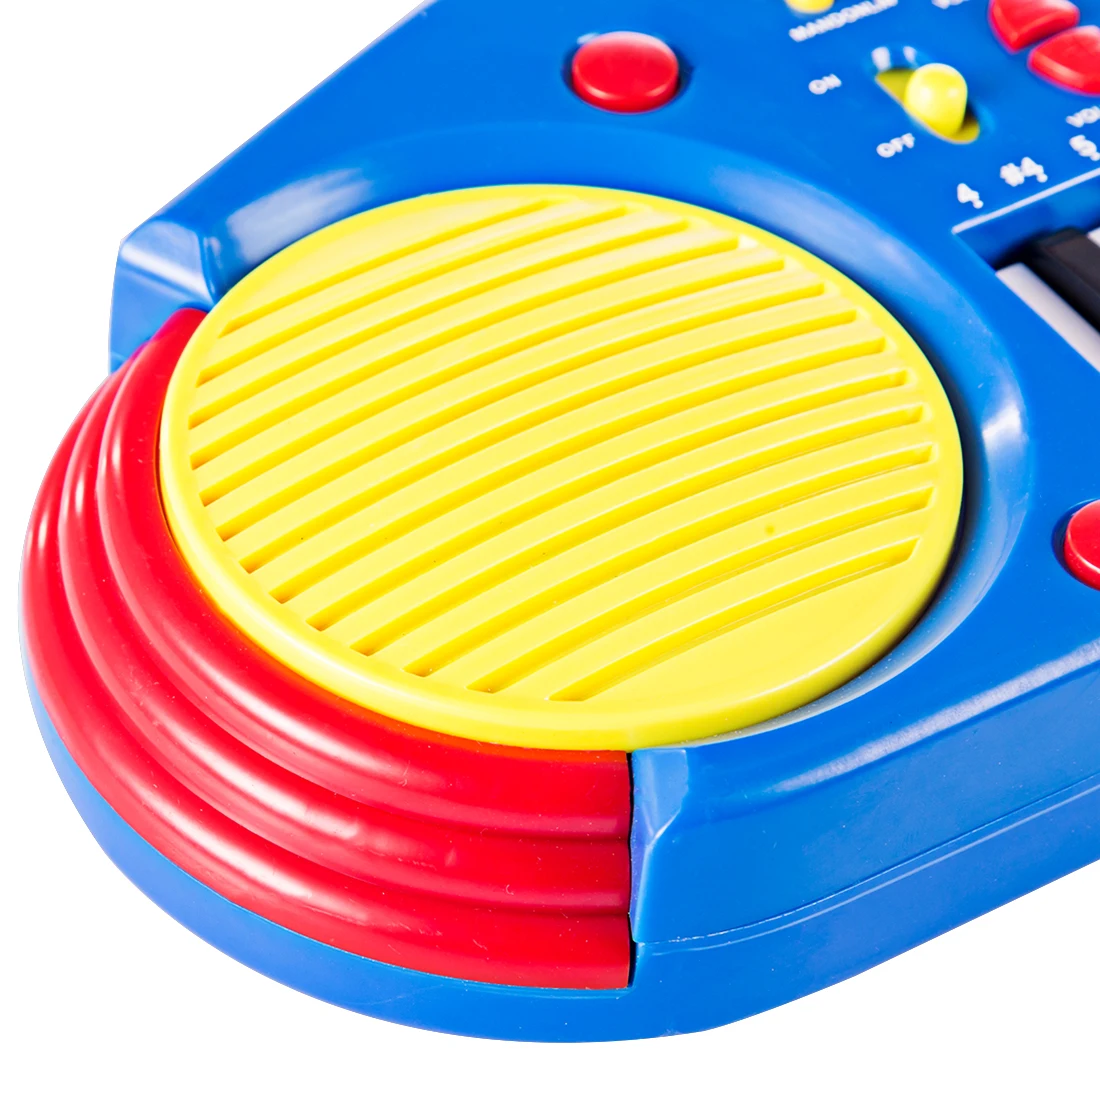 Surwish 32 КЛЮЧ электронная клавиатура пианино Музыкальные инструменты игрушка для детей-желтый+ синий